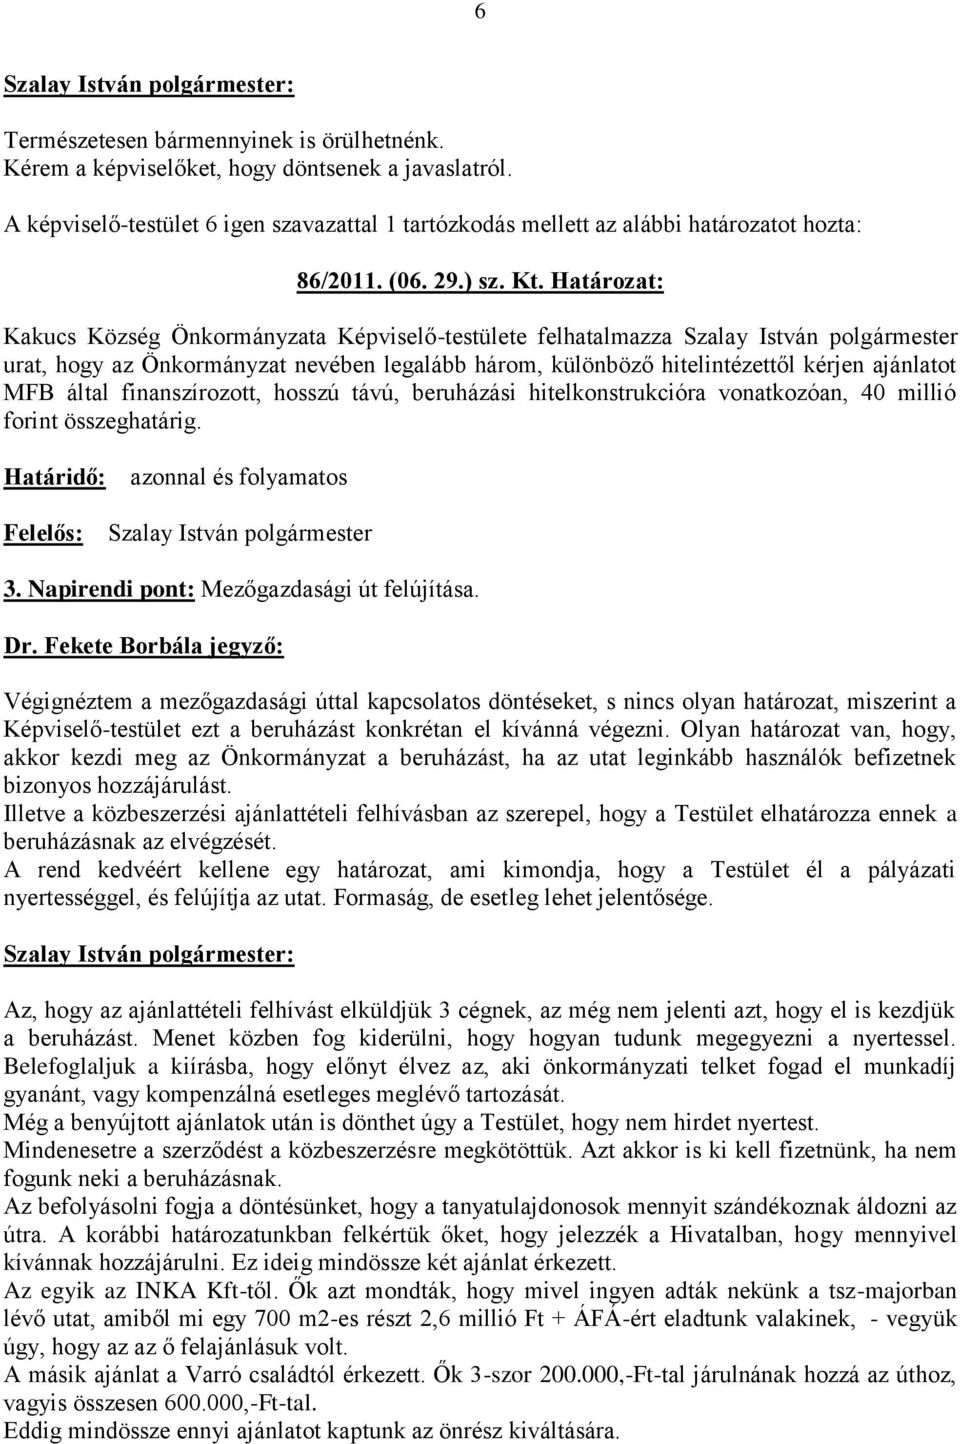 Határozat: Kakucs Község Önkormányzata Képviselő-testülete felhatalmazza Szalay István polgármester urat, hogy az Önkormányzat nevében legalább három, különböző hitelintézettől kérjen ajánlatot MFB